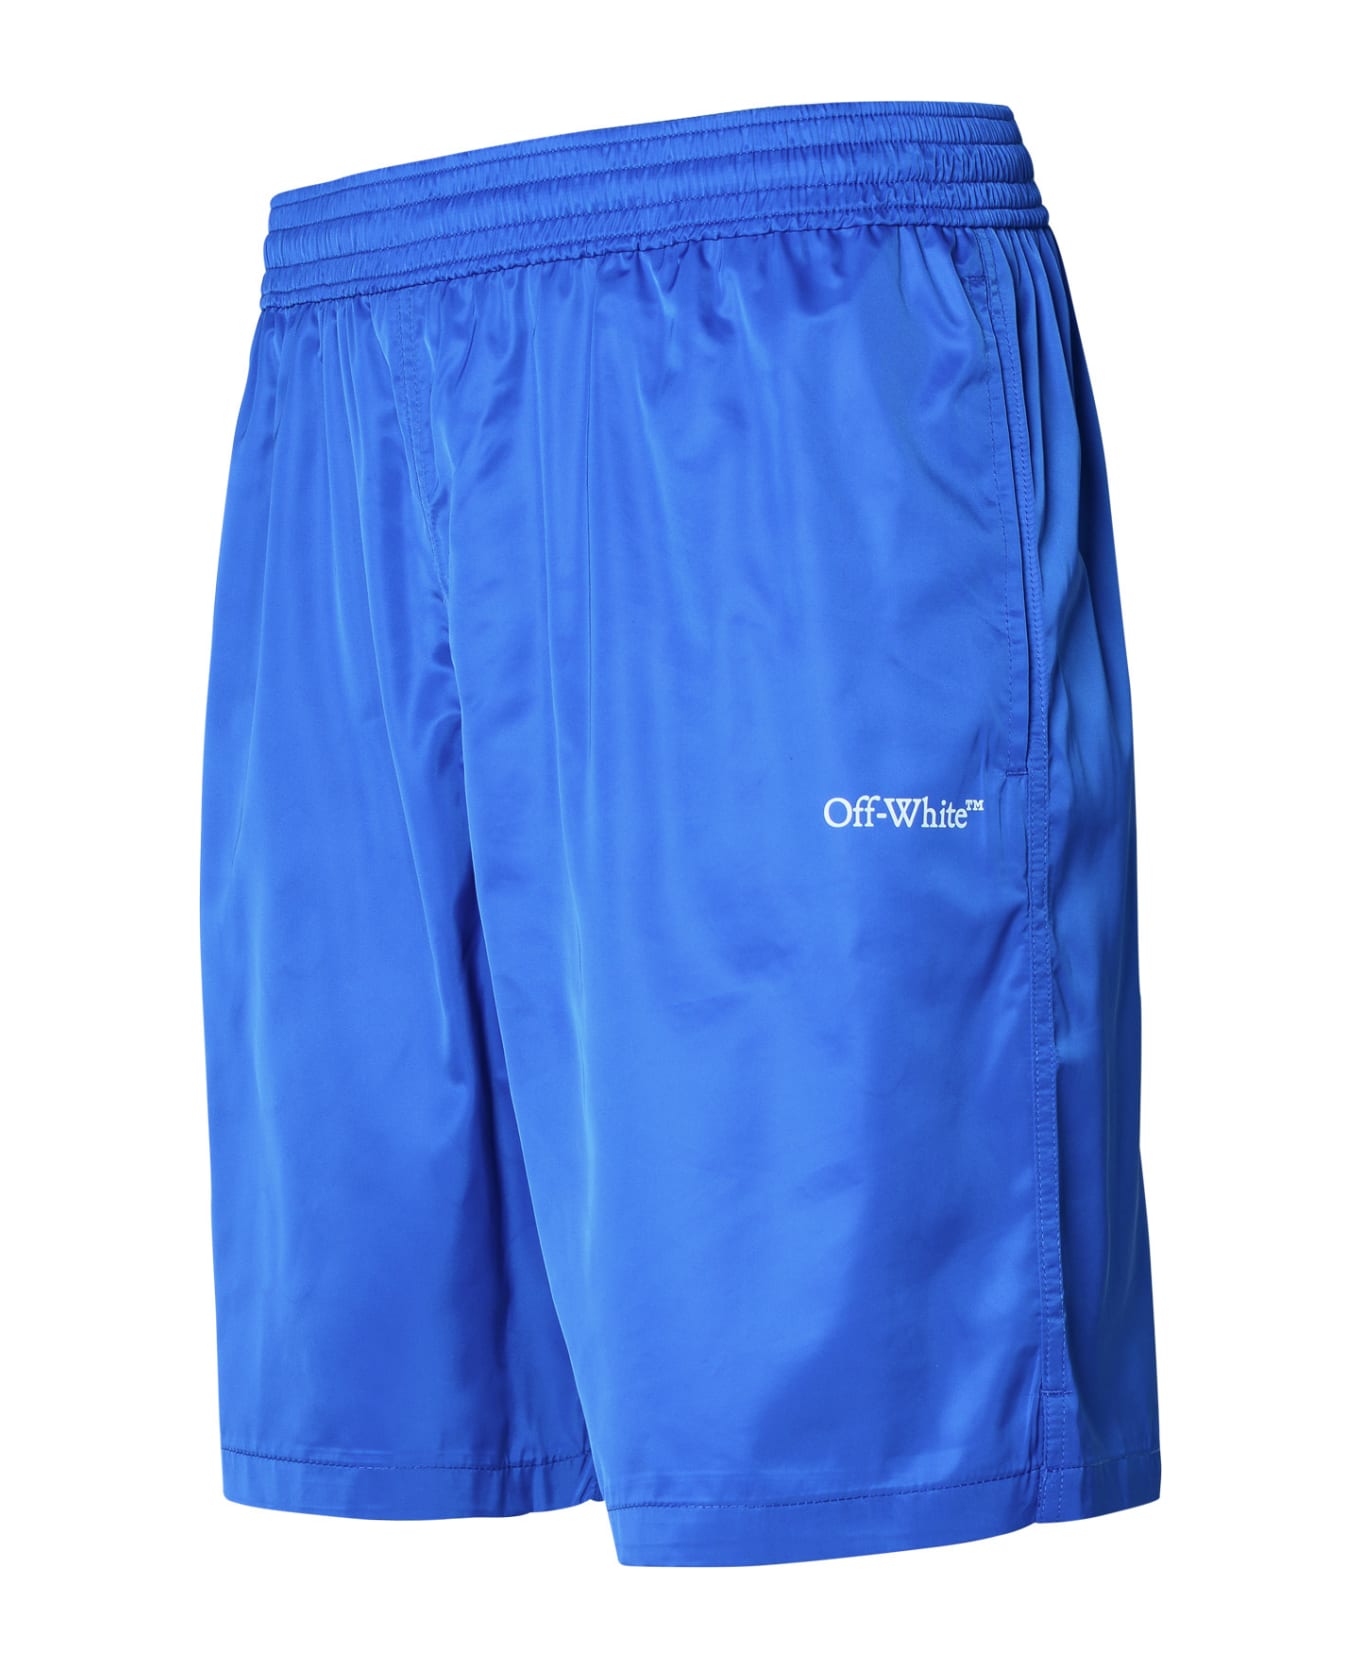 Off-White Swim Shorts - Blue ショートパンツ